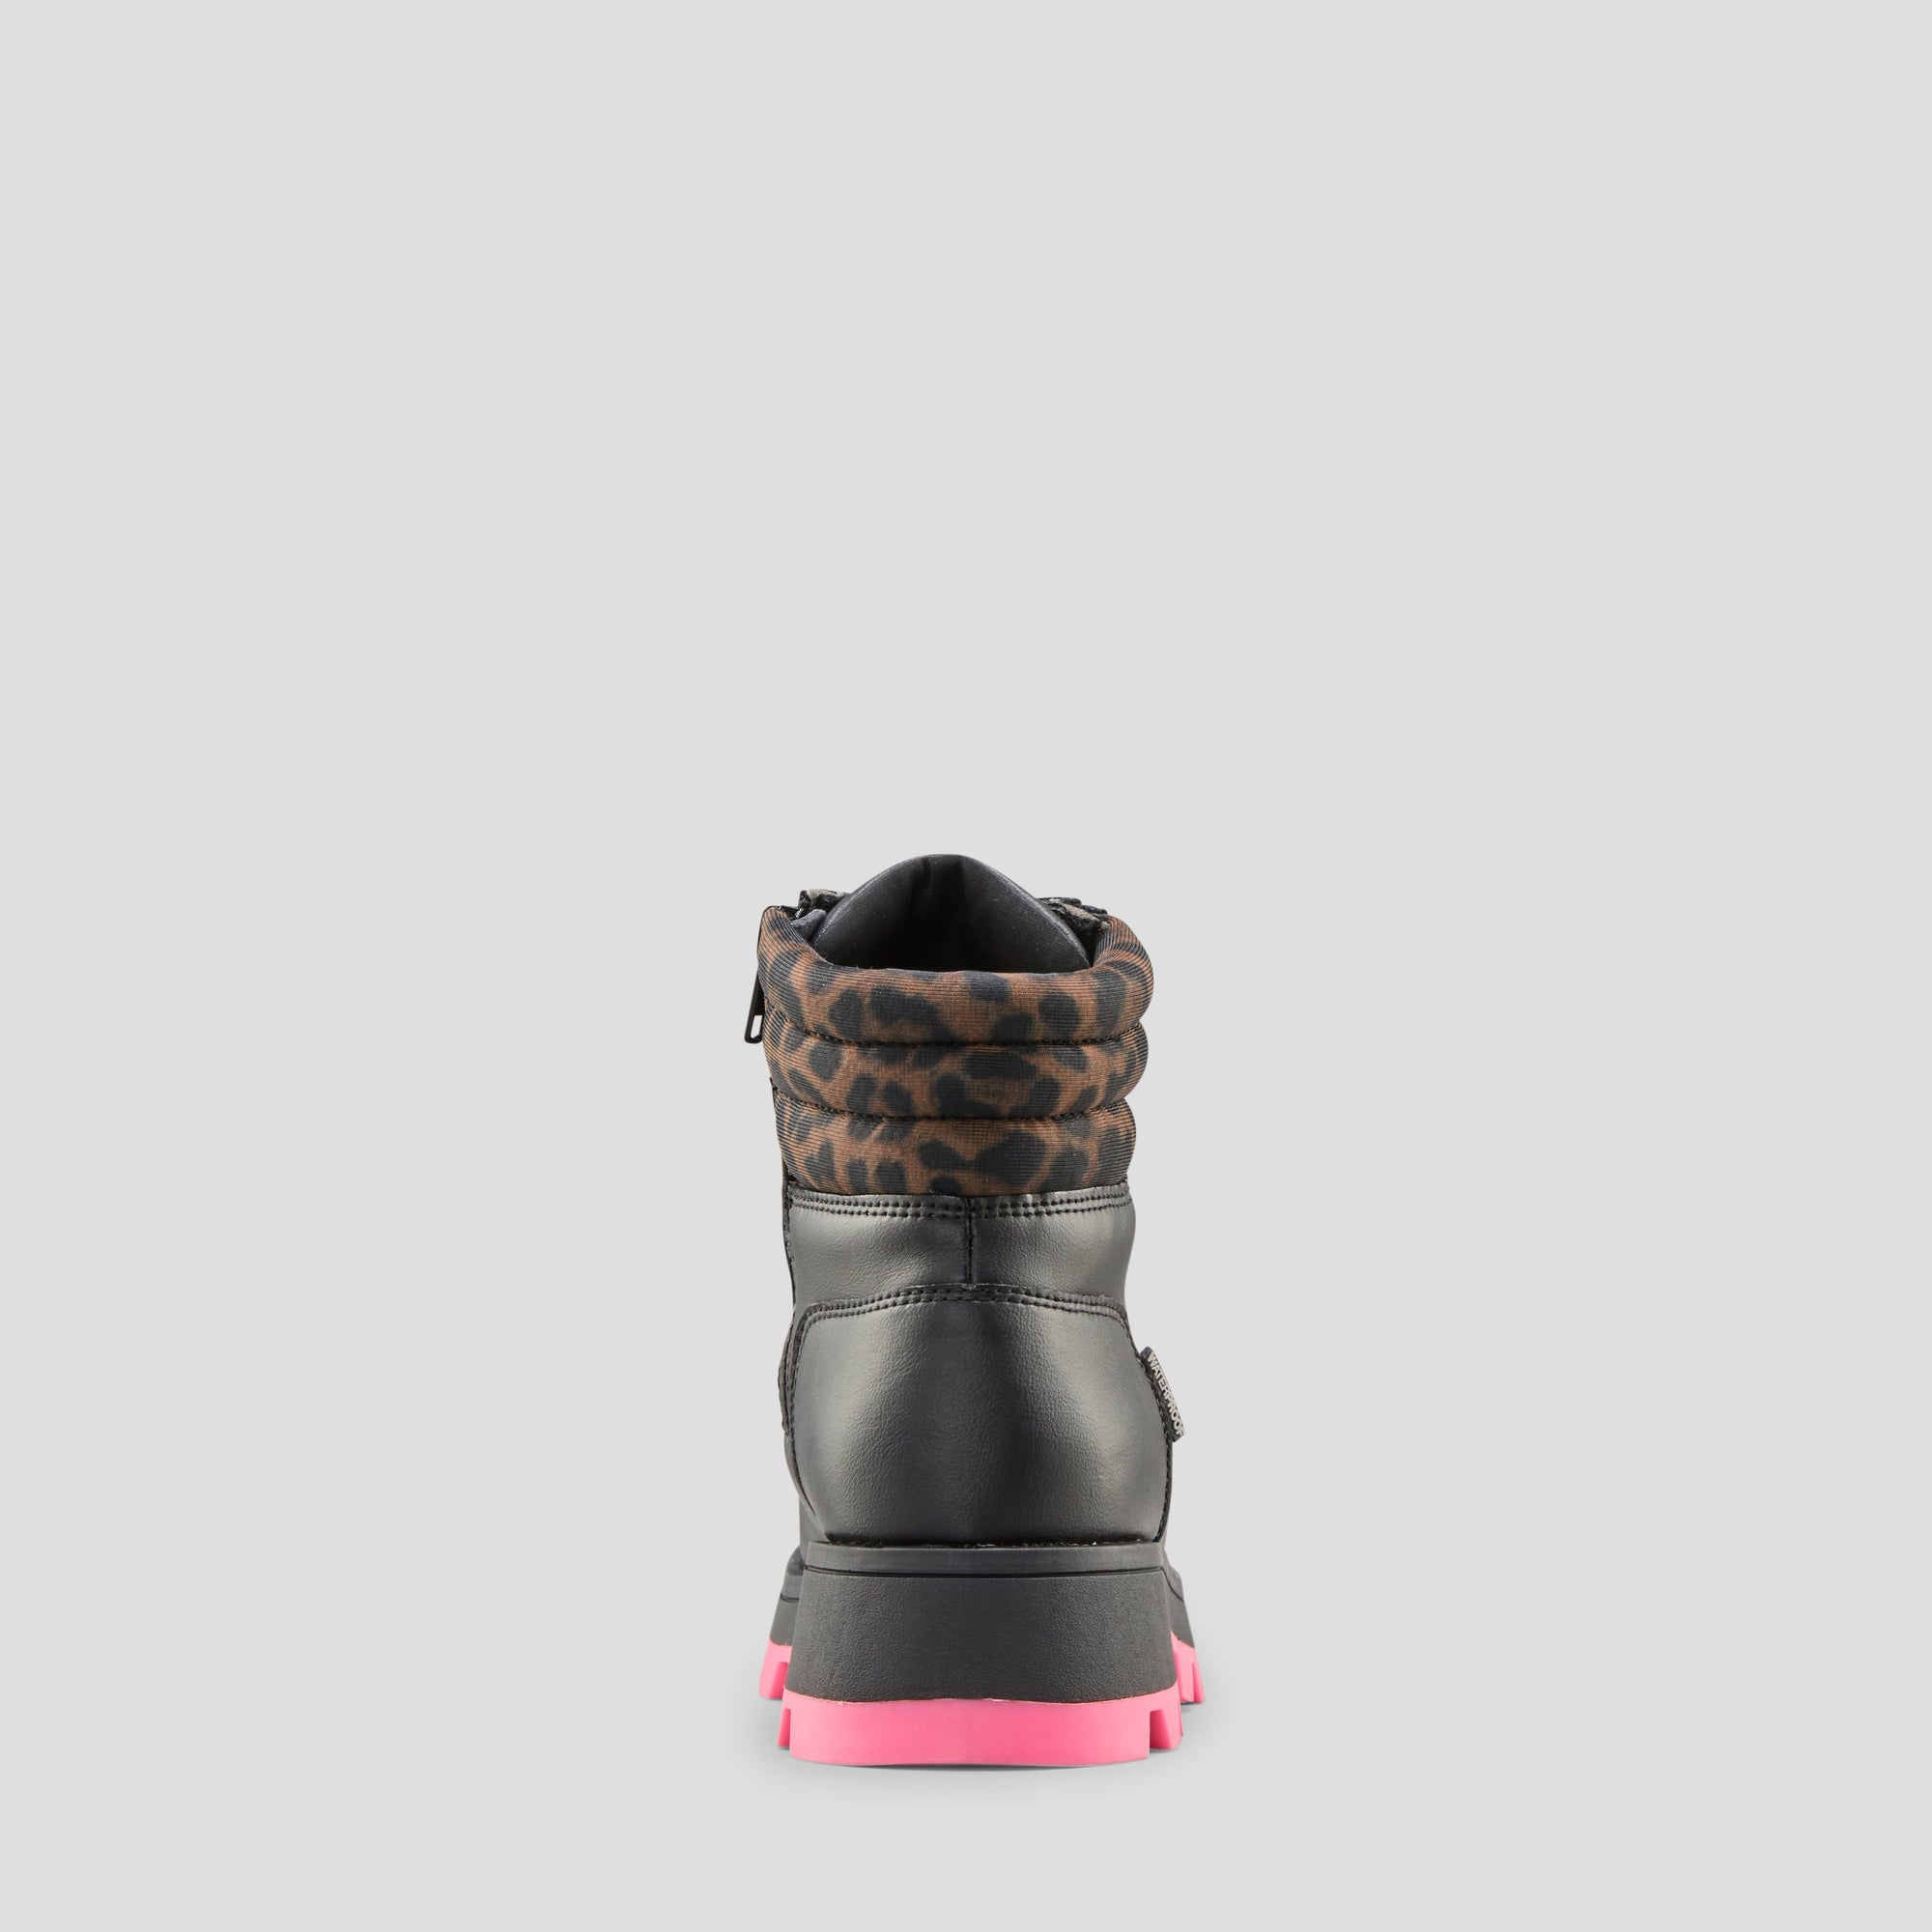 Sasha - Botte imperméable en cuir synthétique et lycra (Junior) - Colour Black-Leopard